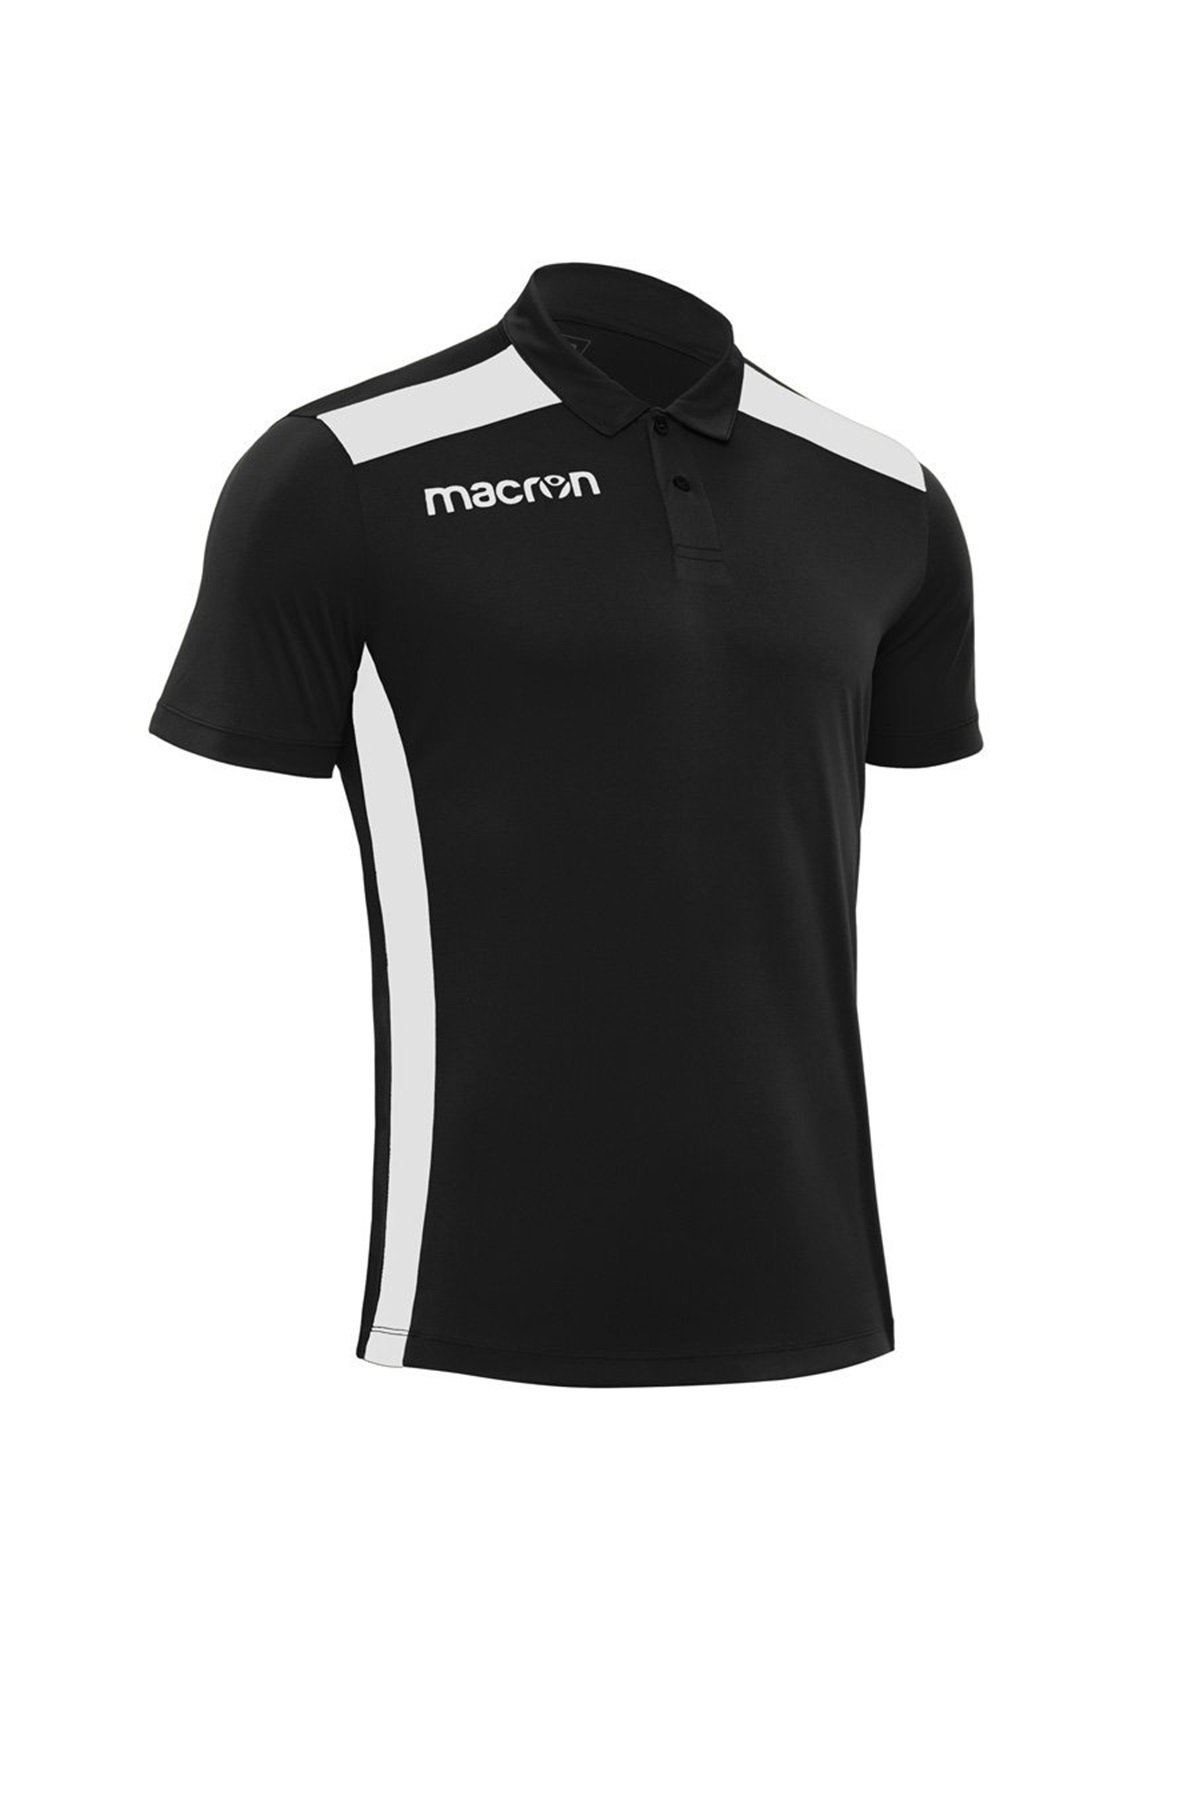 Macron Siyah Polo Yaka T-Shirt 90510901 - 3